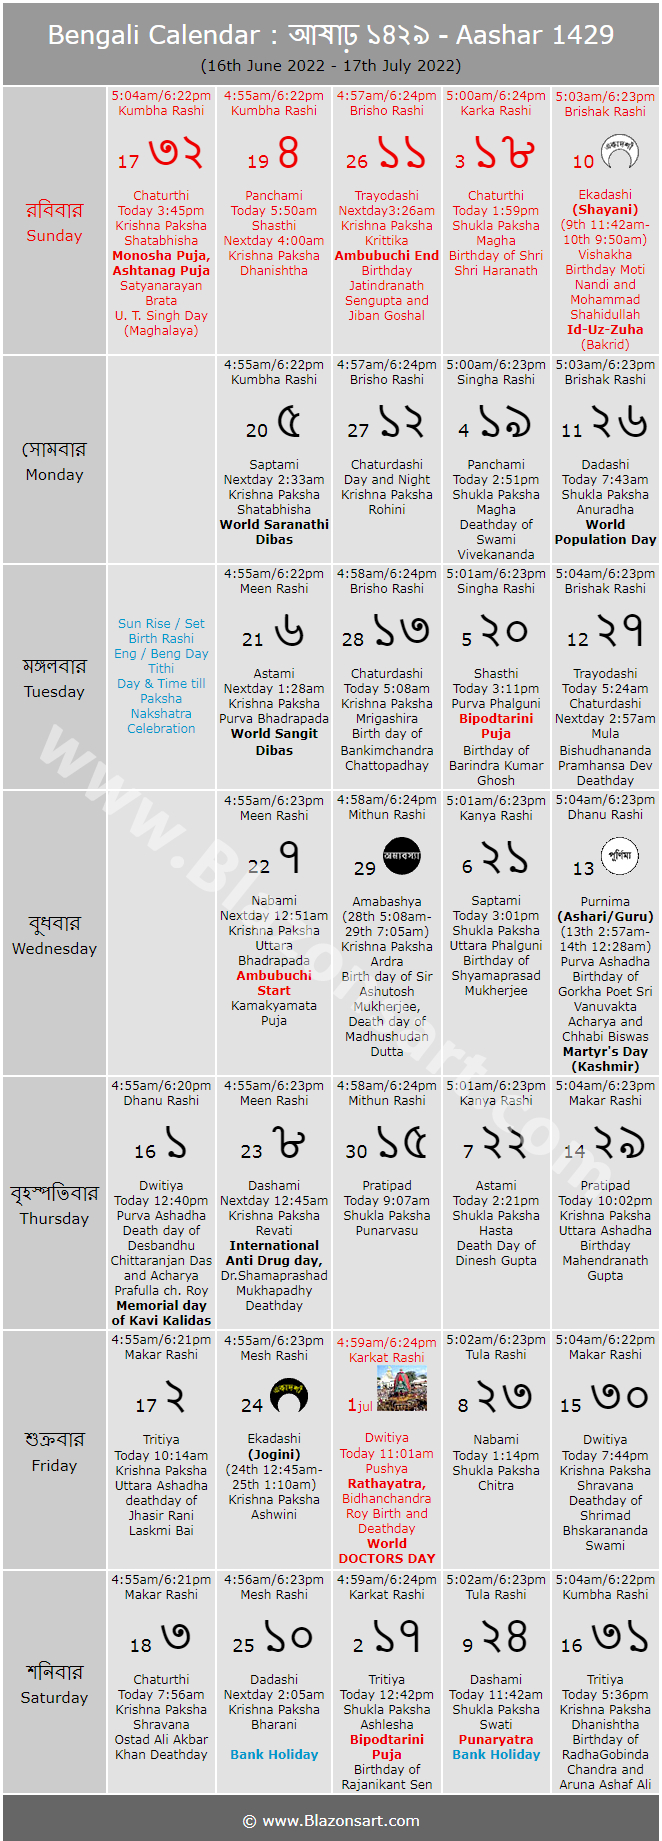 Bengali Calendar - Aashar 1429 : বাংলা কালেন্ডার - আষাঢ়